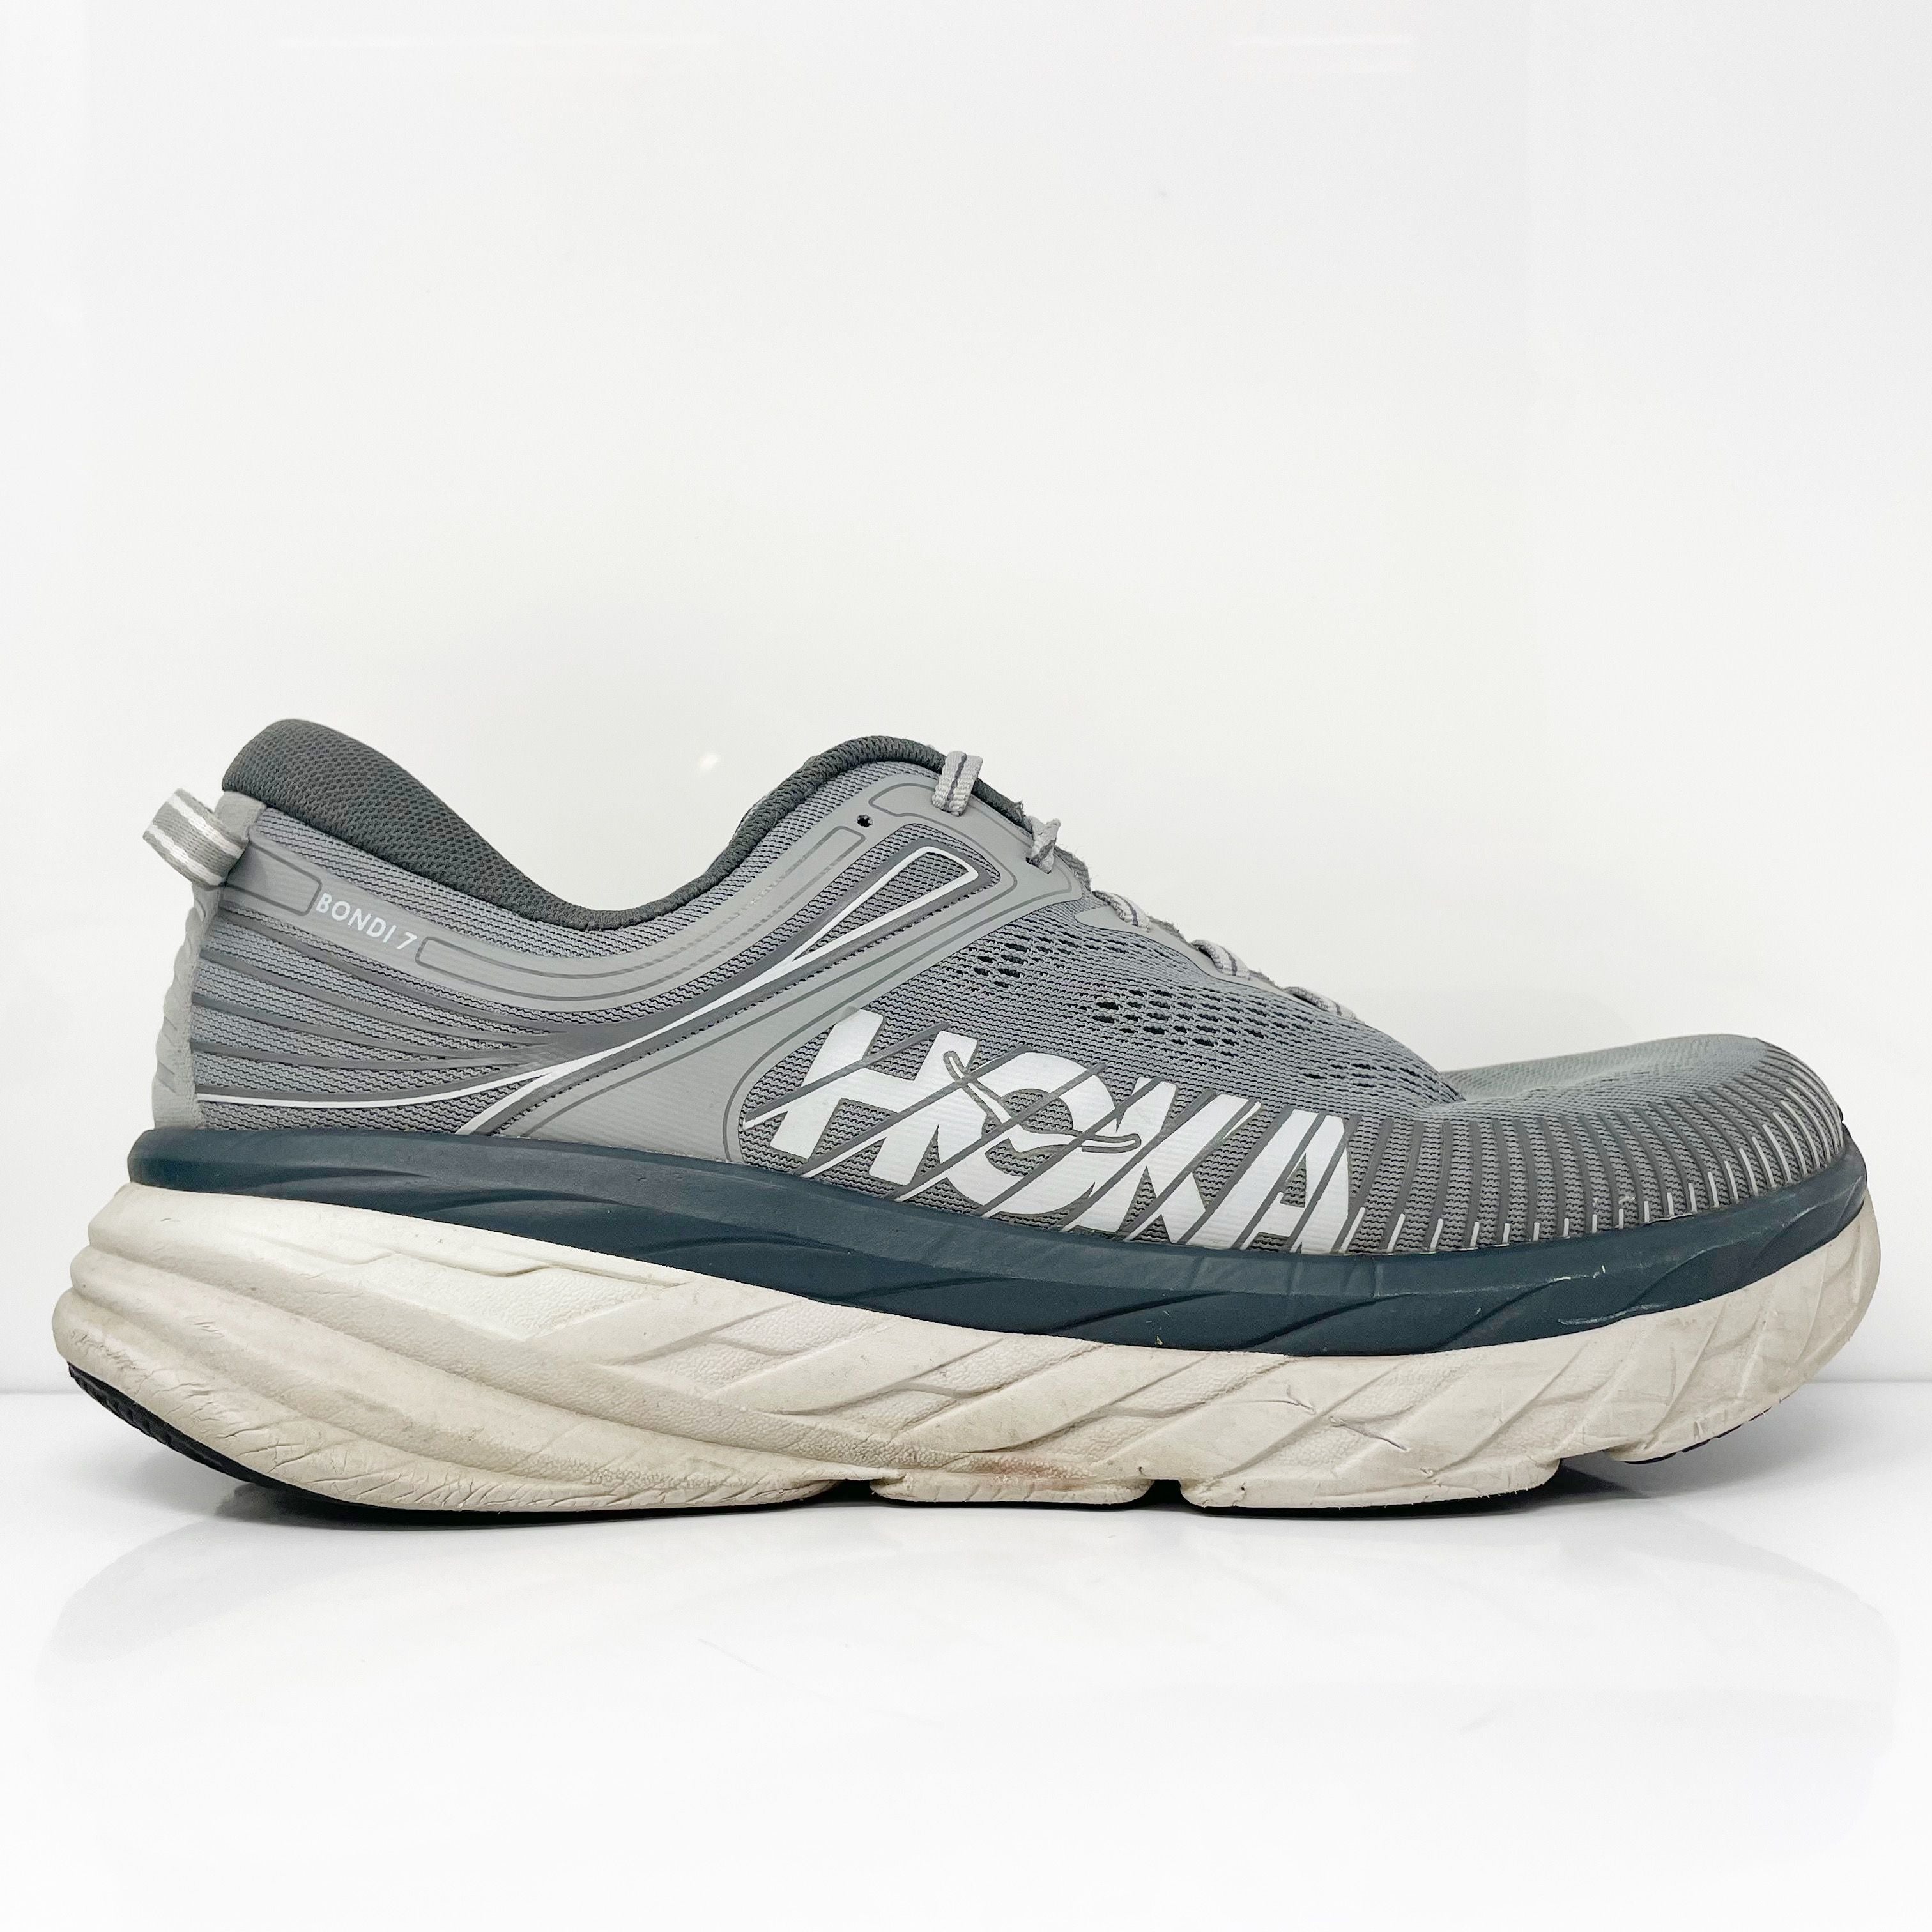 Hoka One One Mens Bondi 7 1110518 WDDS Gray Running Shoes Sneakers Siz ...